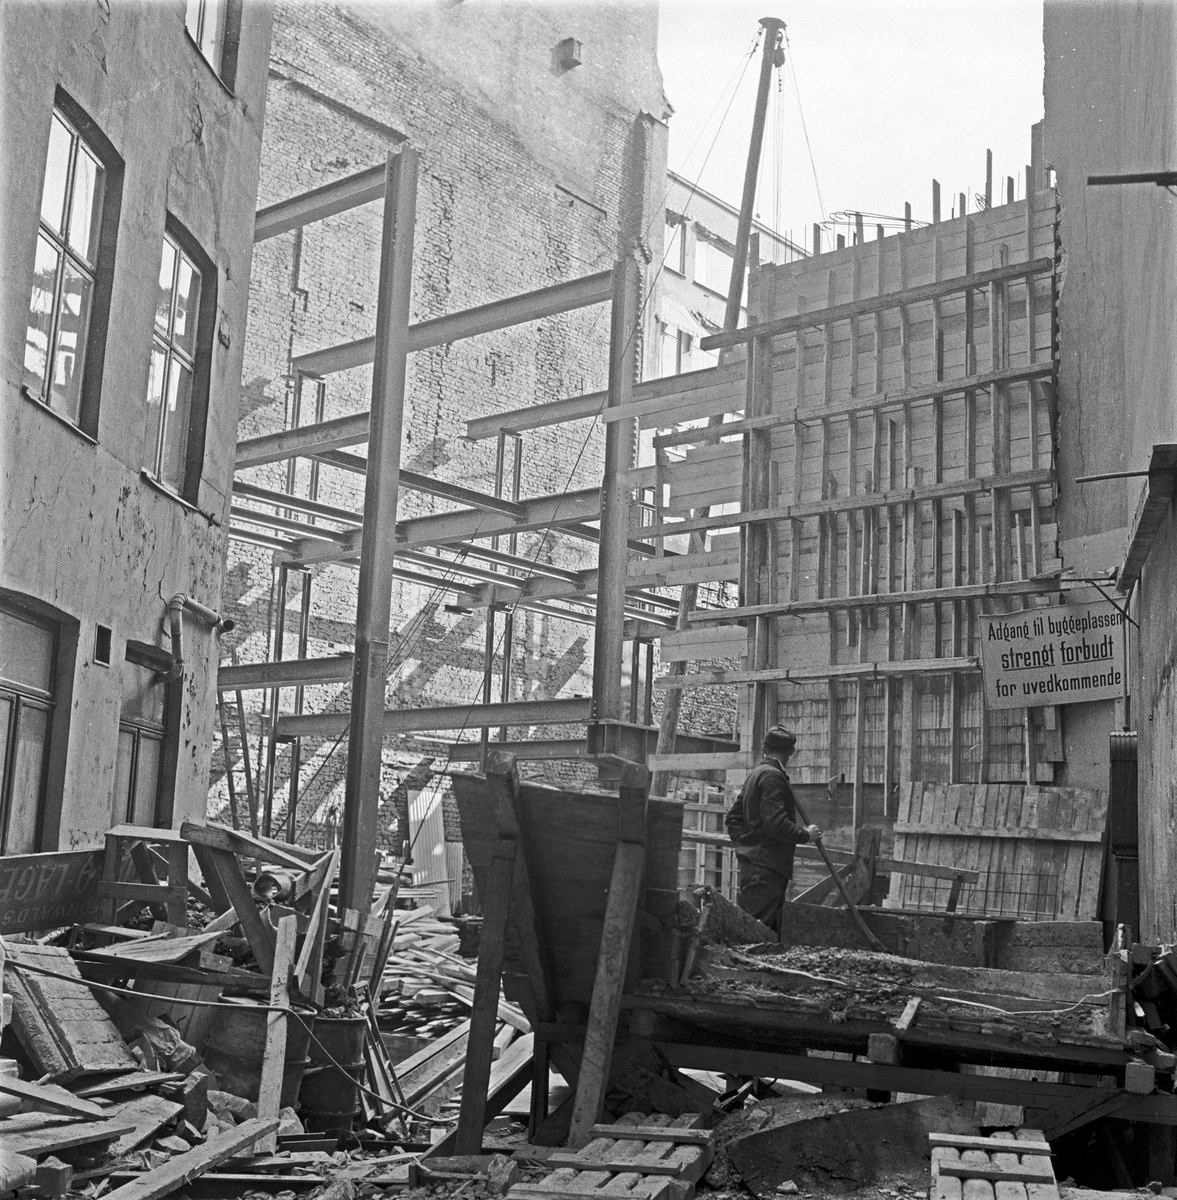 Serie. Dagbladets nye kontorbygg under bygging. Fotografert 1956.